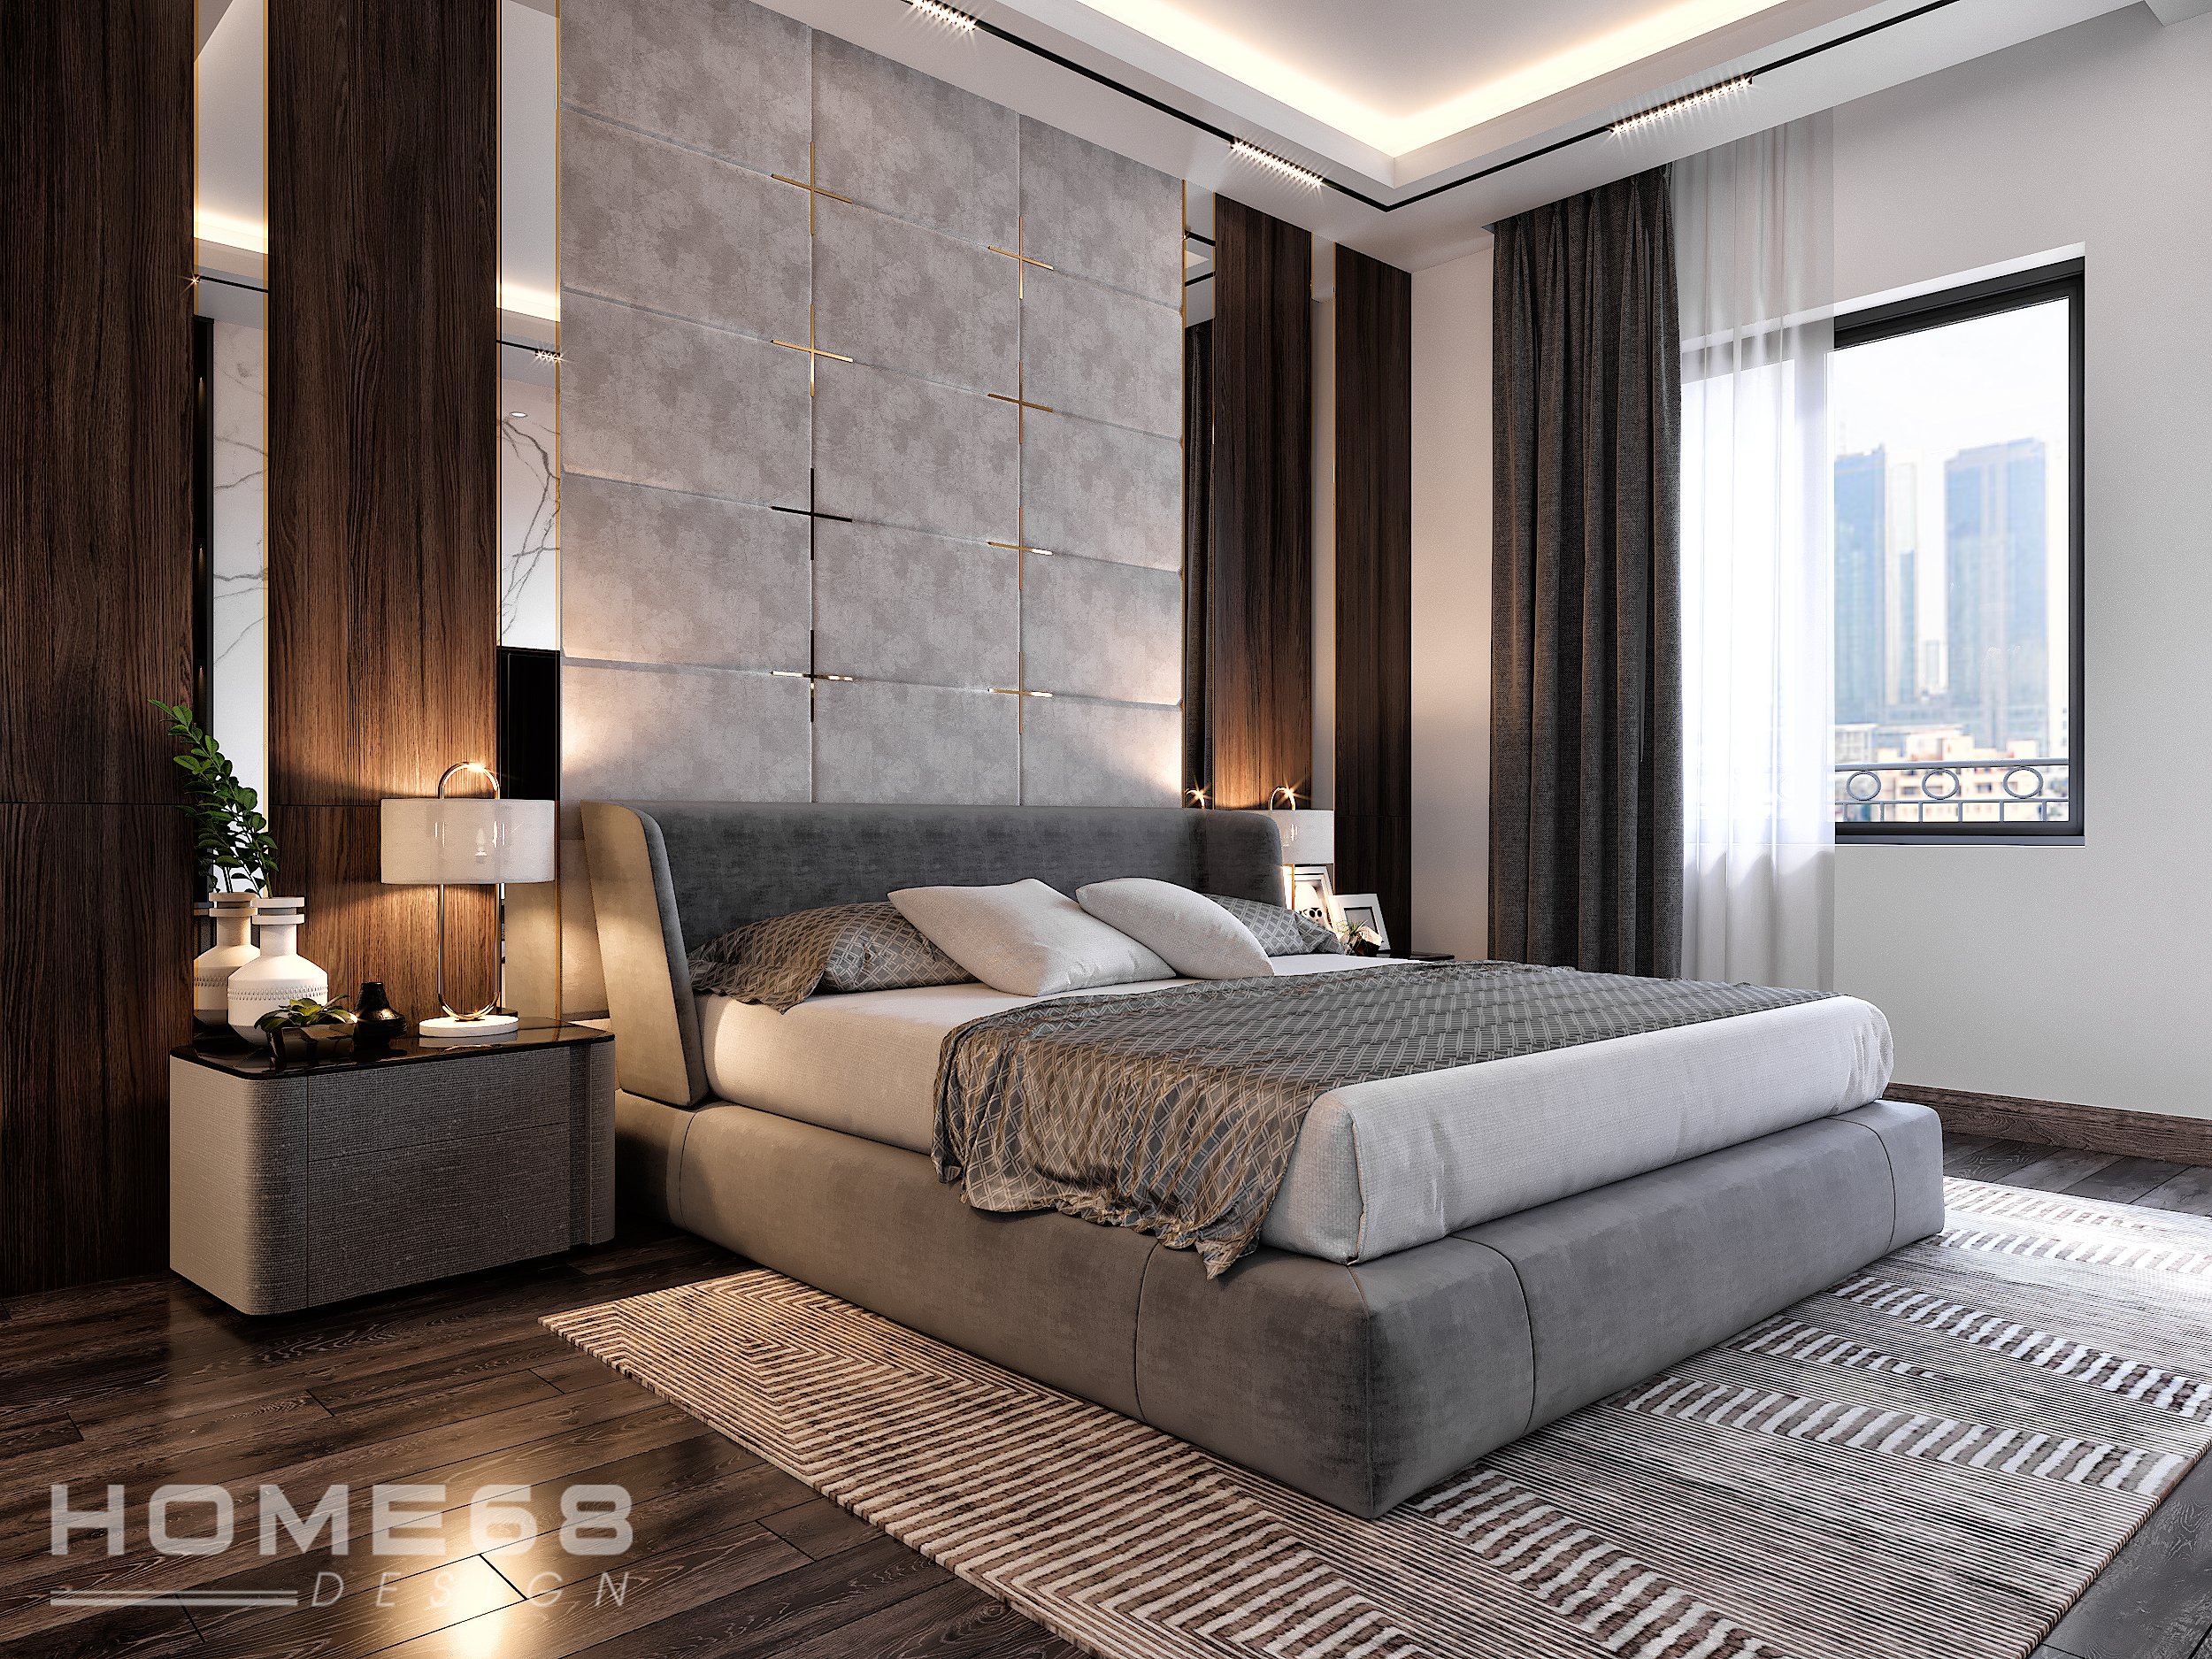 Thiết kế nội thất phòng ngủ hiện đại với đầy đủ tiện nghi và mở rộng không gian xung quanh sẽ giúp bạn có một không gian nghỉ ngơi thoải mái và thư giãn trong những ngày bận rộn. Hãy cùng chúng tôi khám phá những ý tưởng thiết kế nội thất phòng ngủ hiện đại và sang trọng!